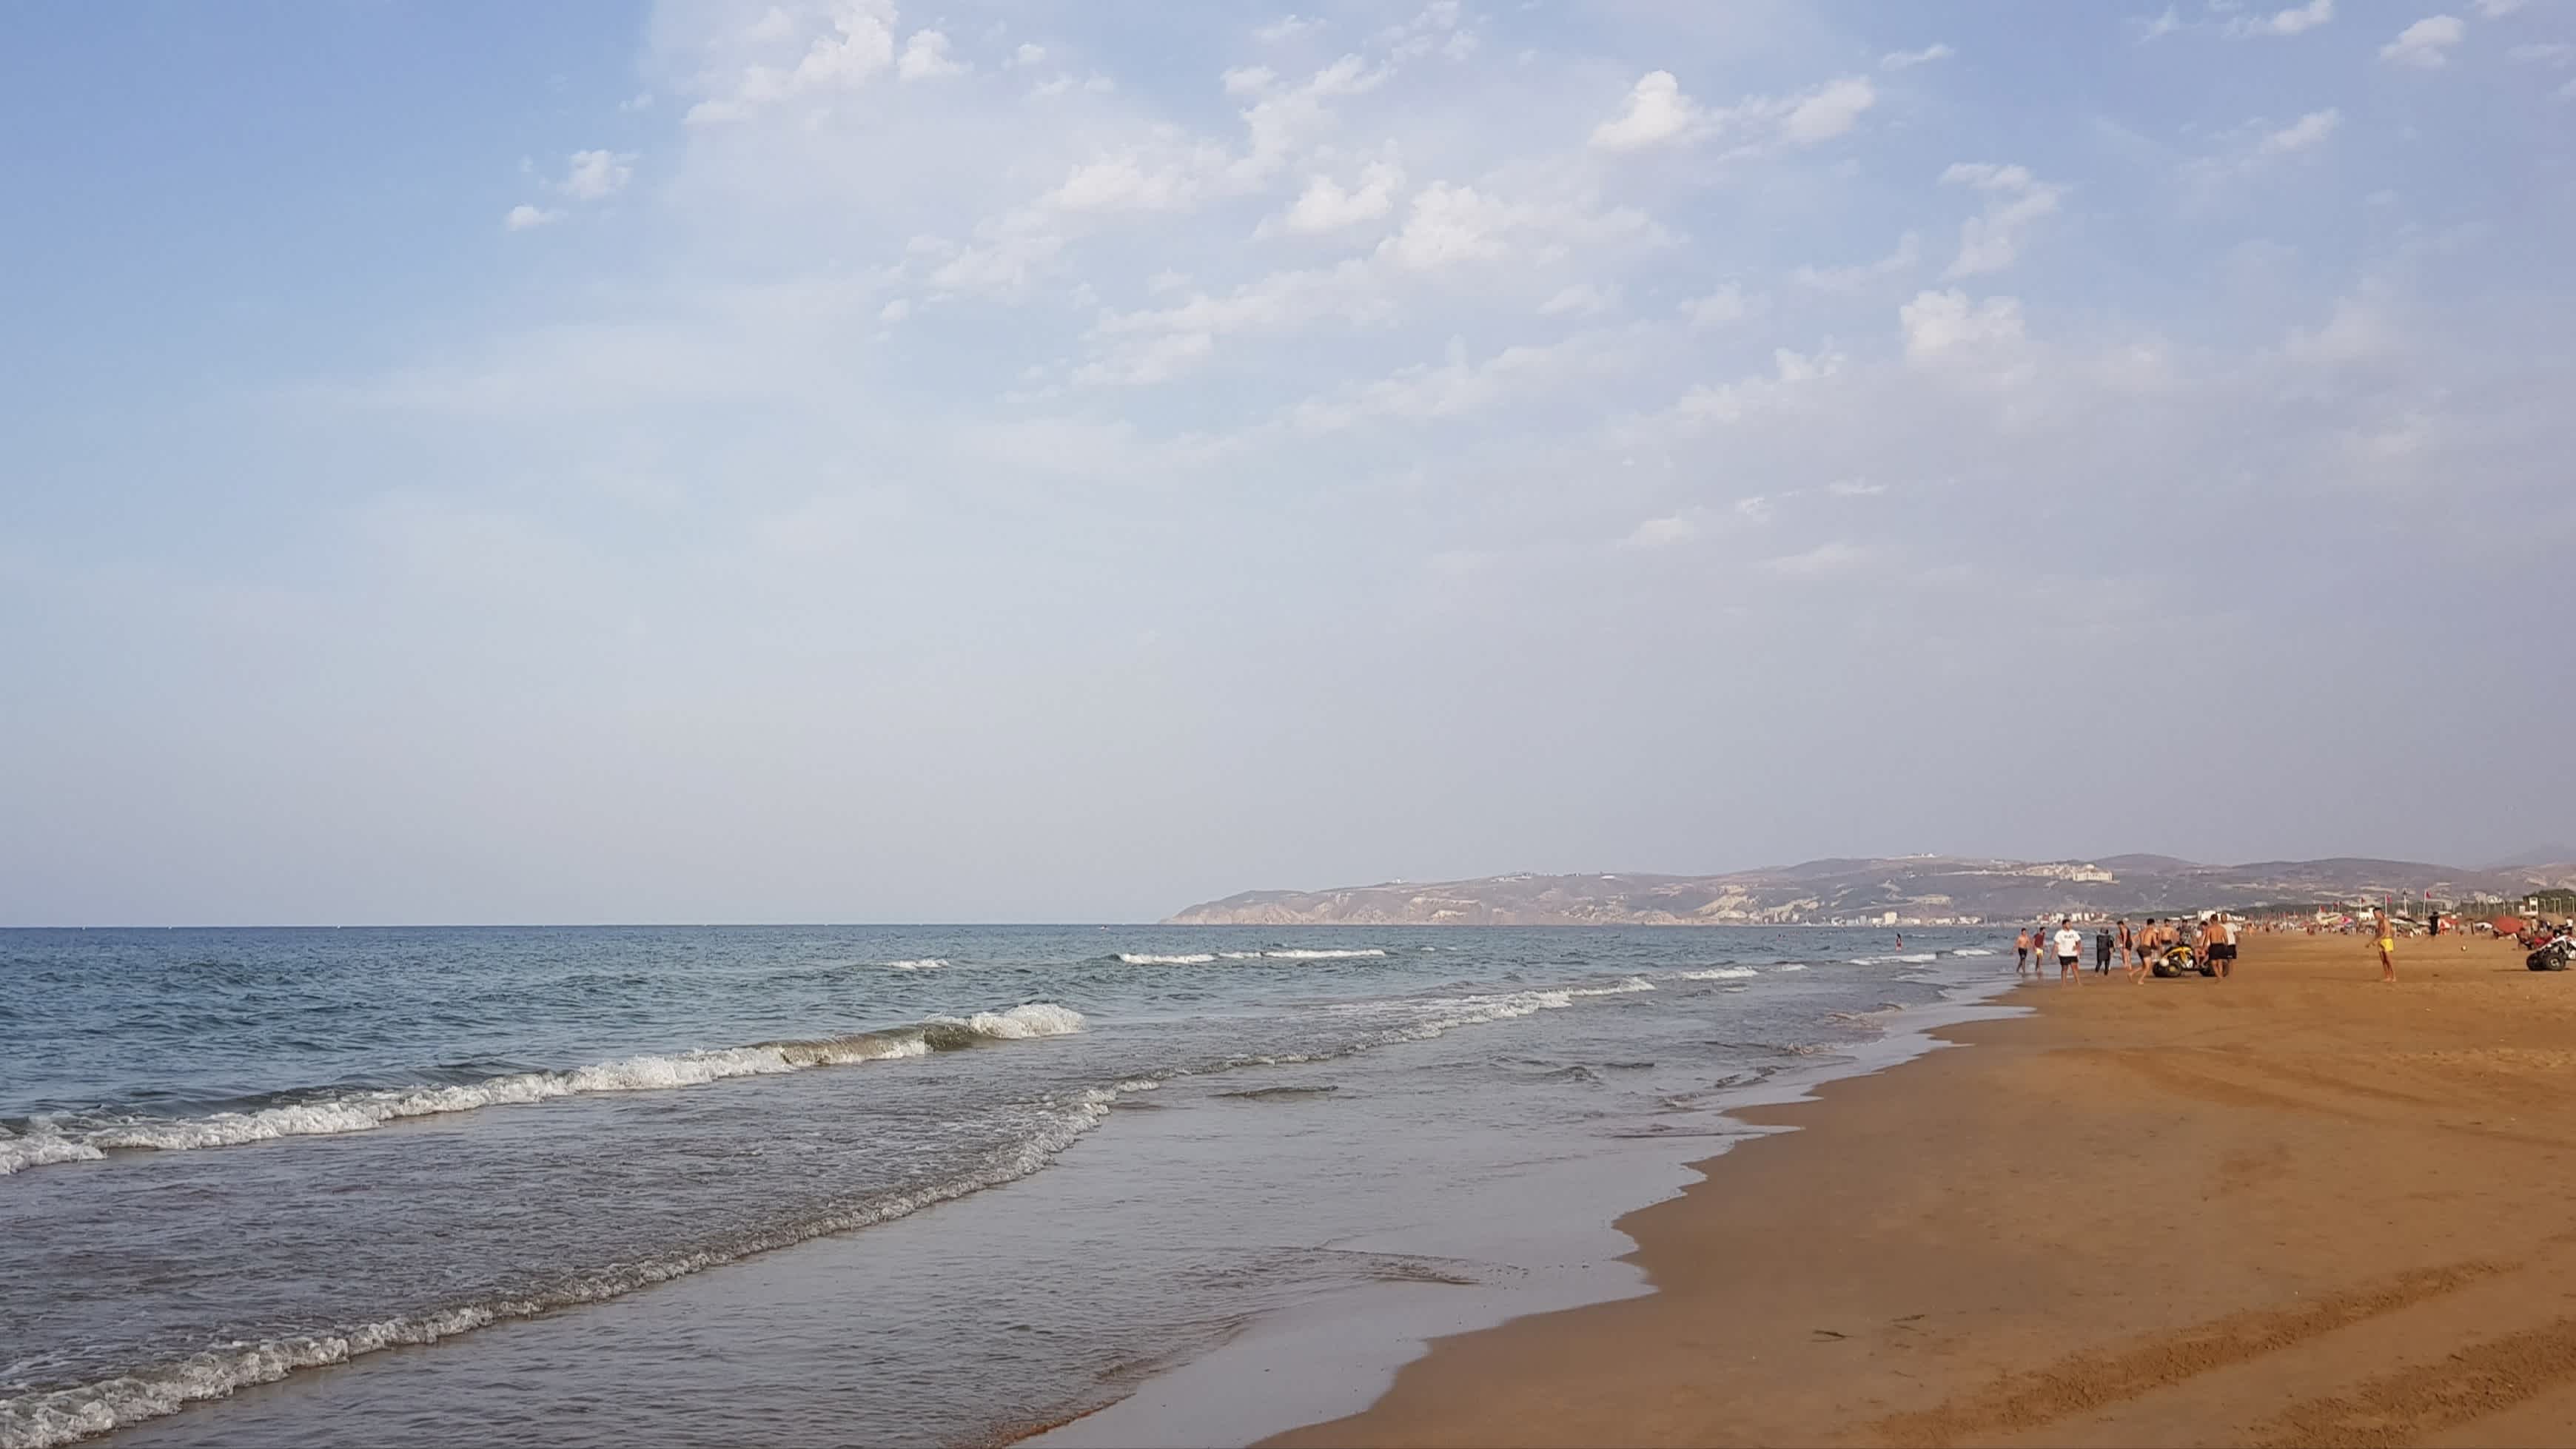 Der Blick auf den Strand von Saidia, Marokko bei bewölktem Himmel.

